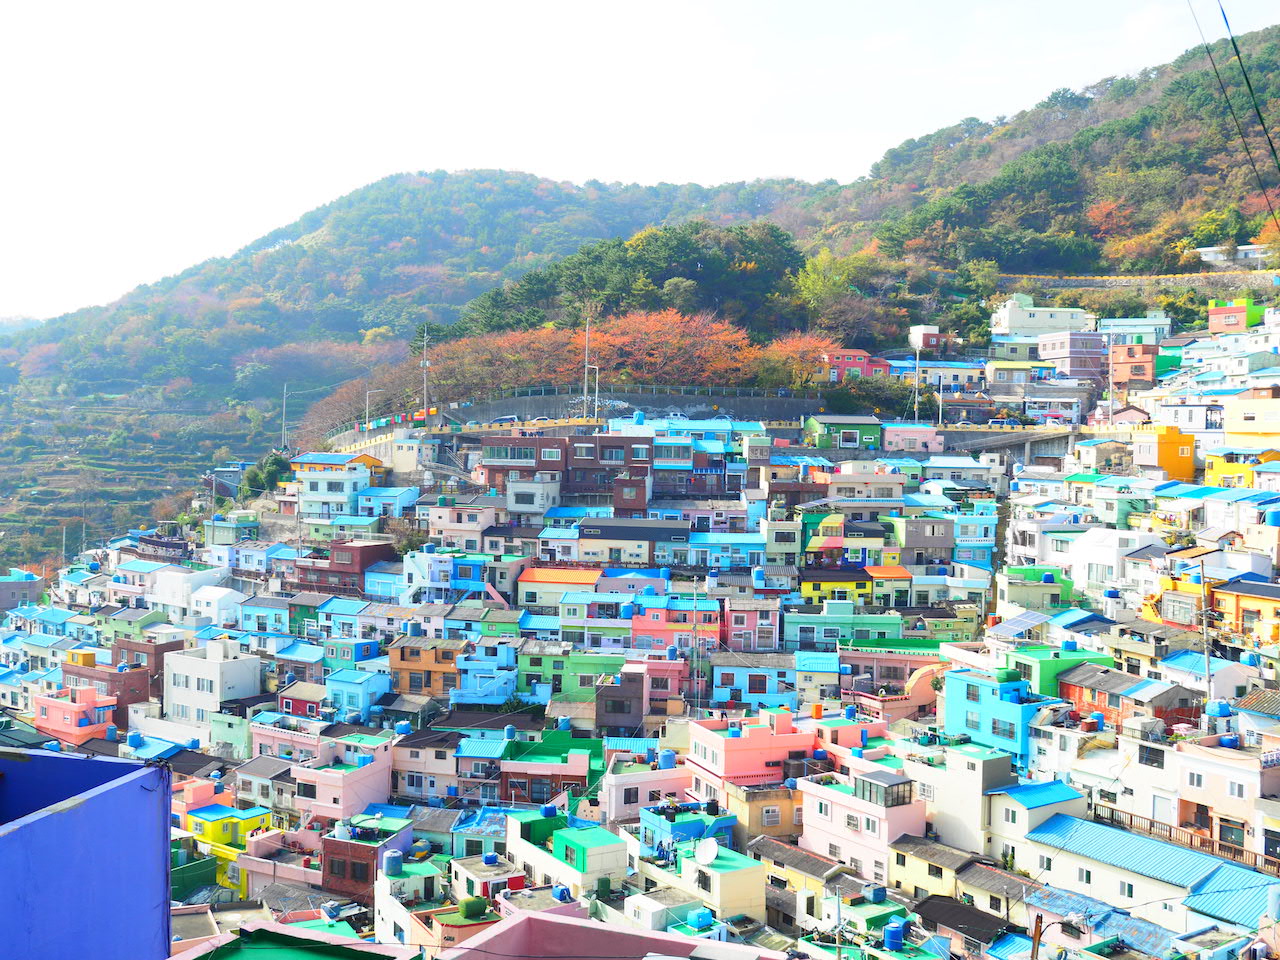 映画heroのロケ地にもなった 韓国 釜山にある甘川文化村に行ってみた Tabizine 人生に旅心を